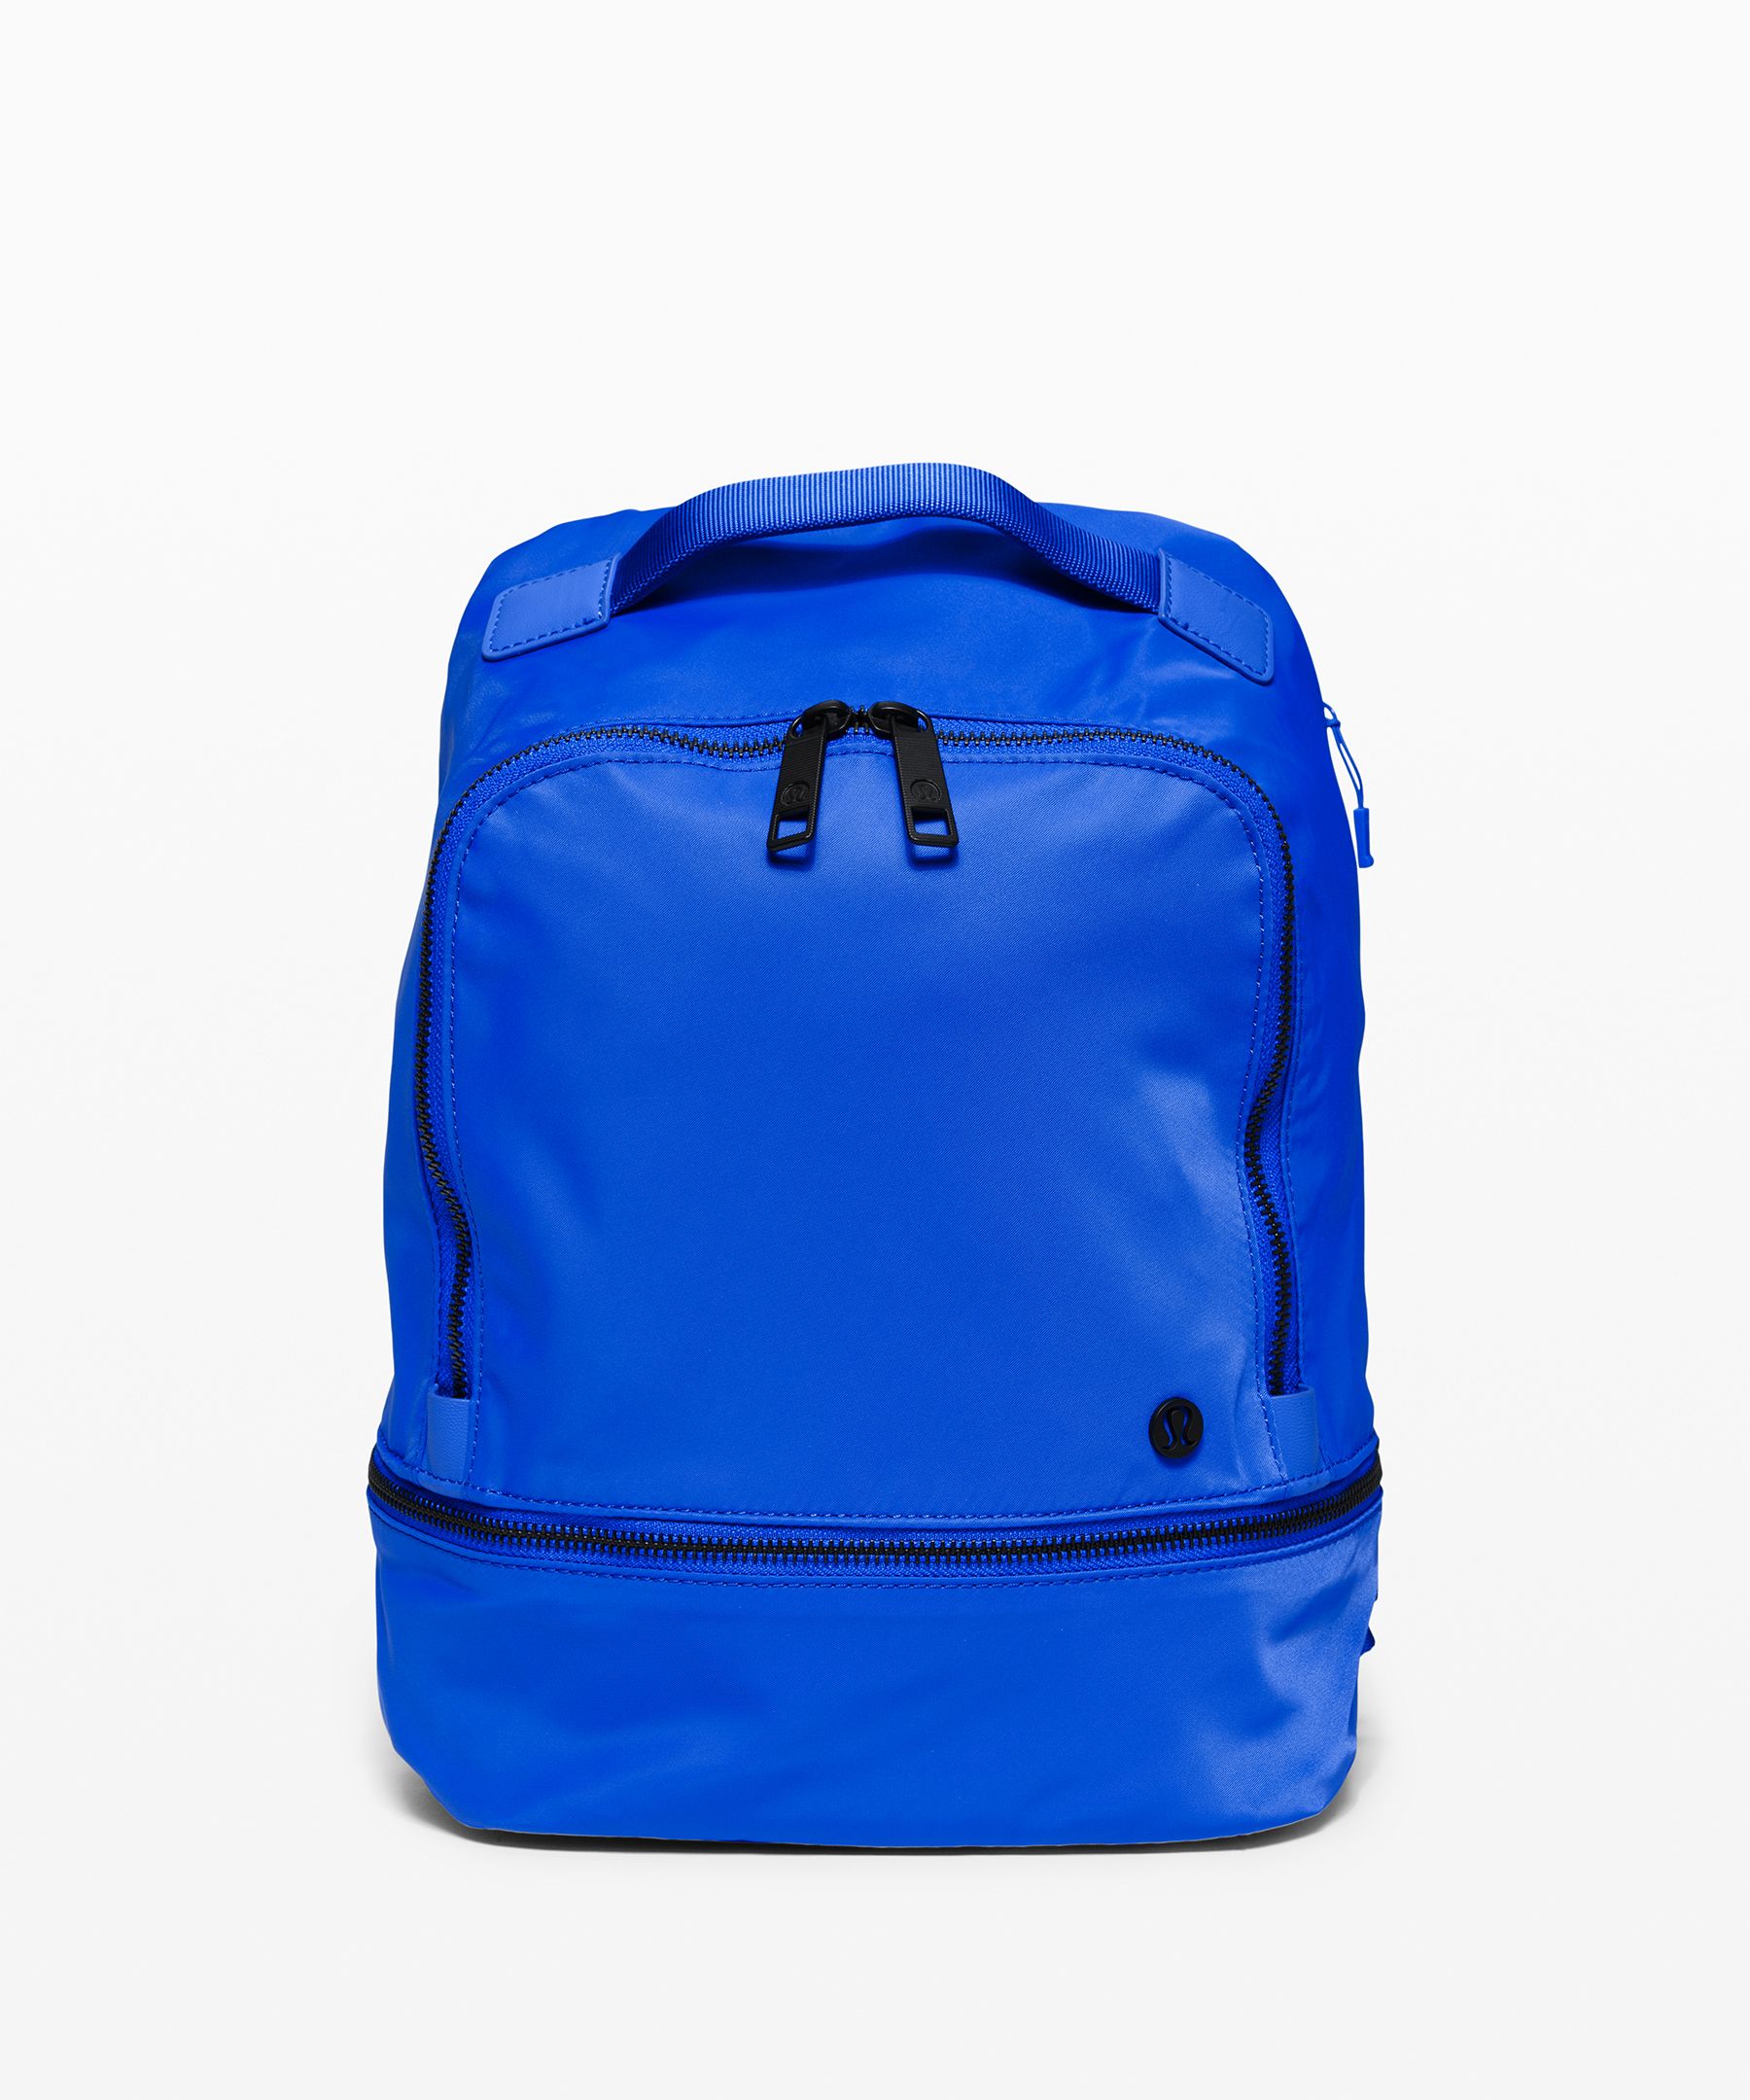 Lululemon City Adventurer Backpack *mini 10l In Wild Bluebell